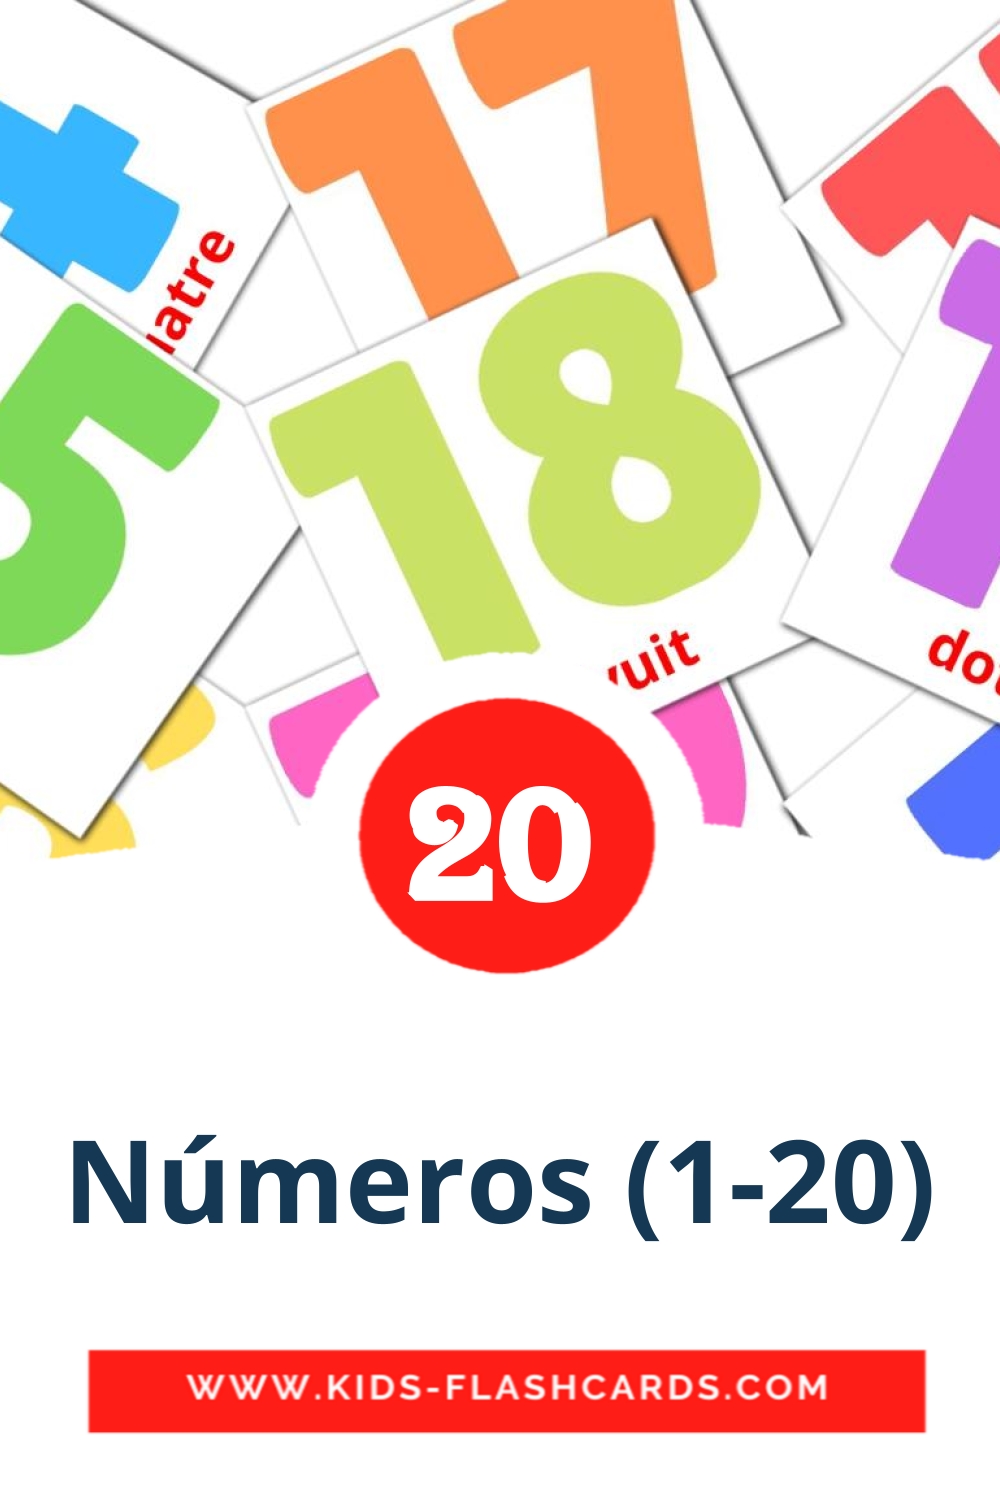 20 tarjetas didacticas de Números (1-20) para el jardín de infancia en catalán